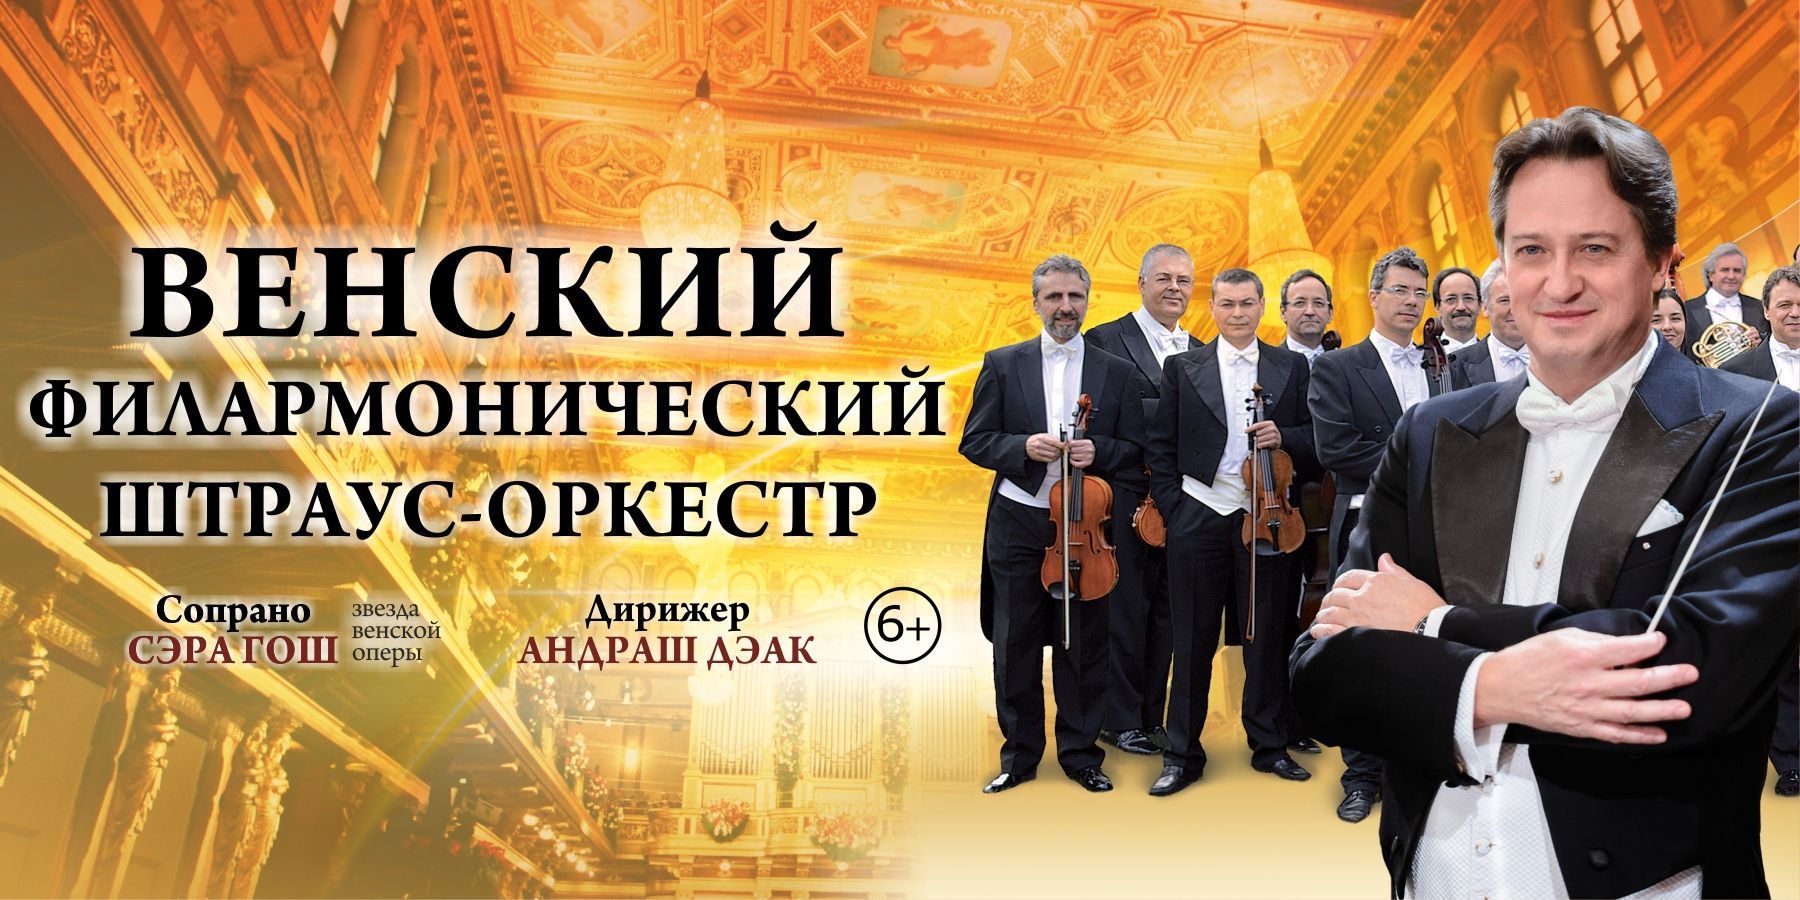 Венский Филармонический Штраус-оркестр (Австрия)